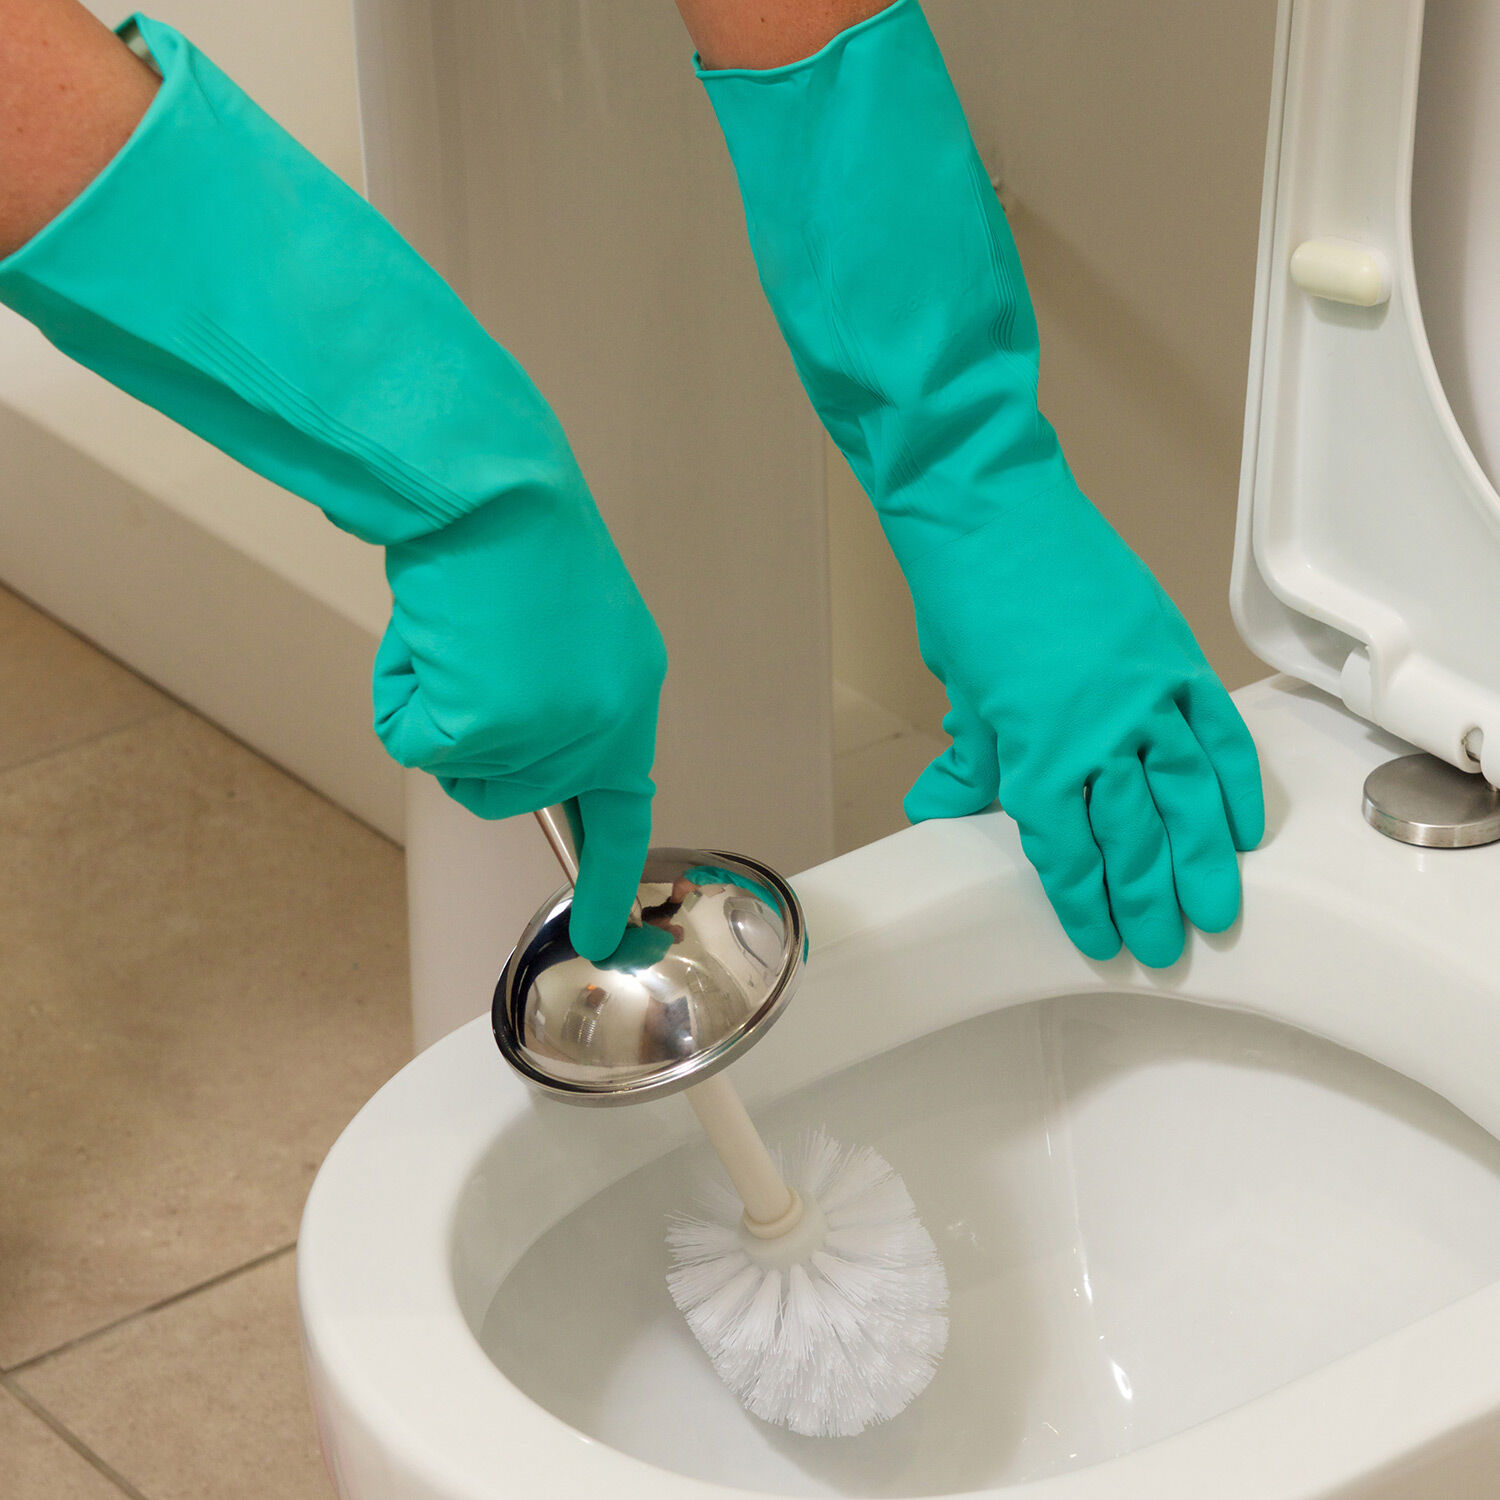 Убрать засор в унитазе в домашних условиях. Для мытья сантехники. Чистка туалета.